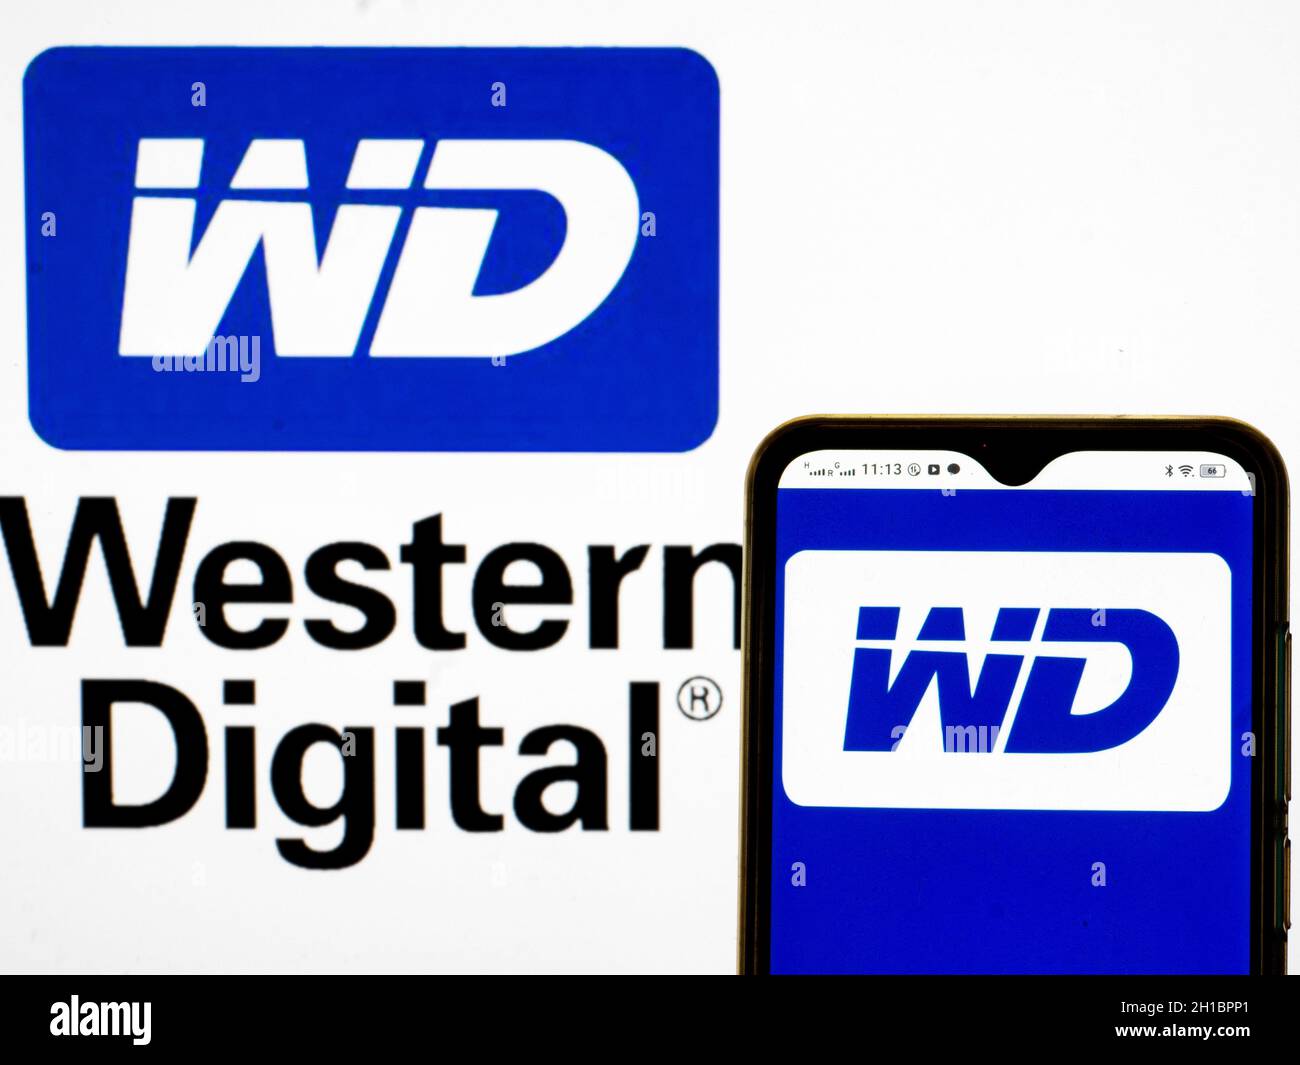 western digital logo